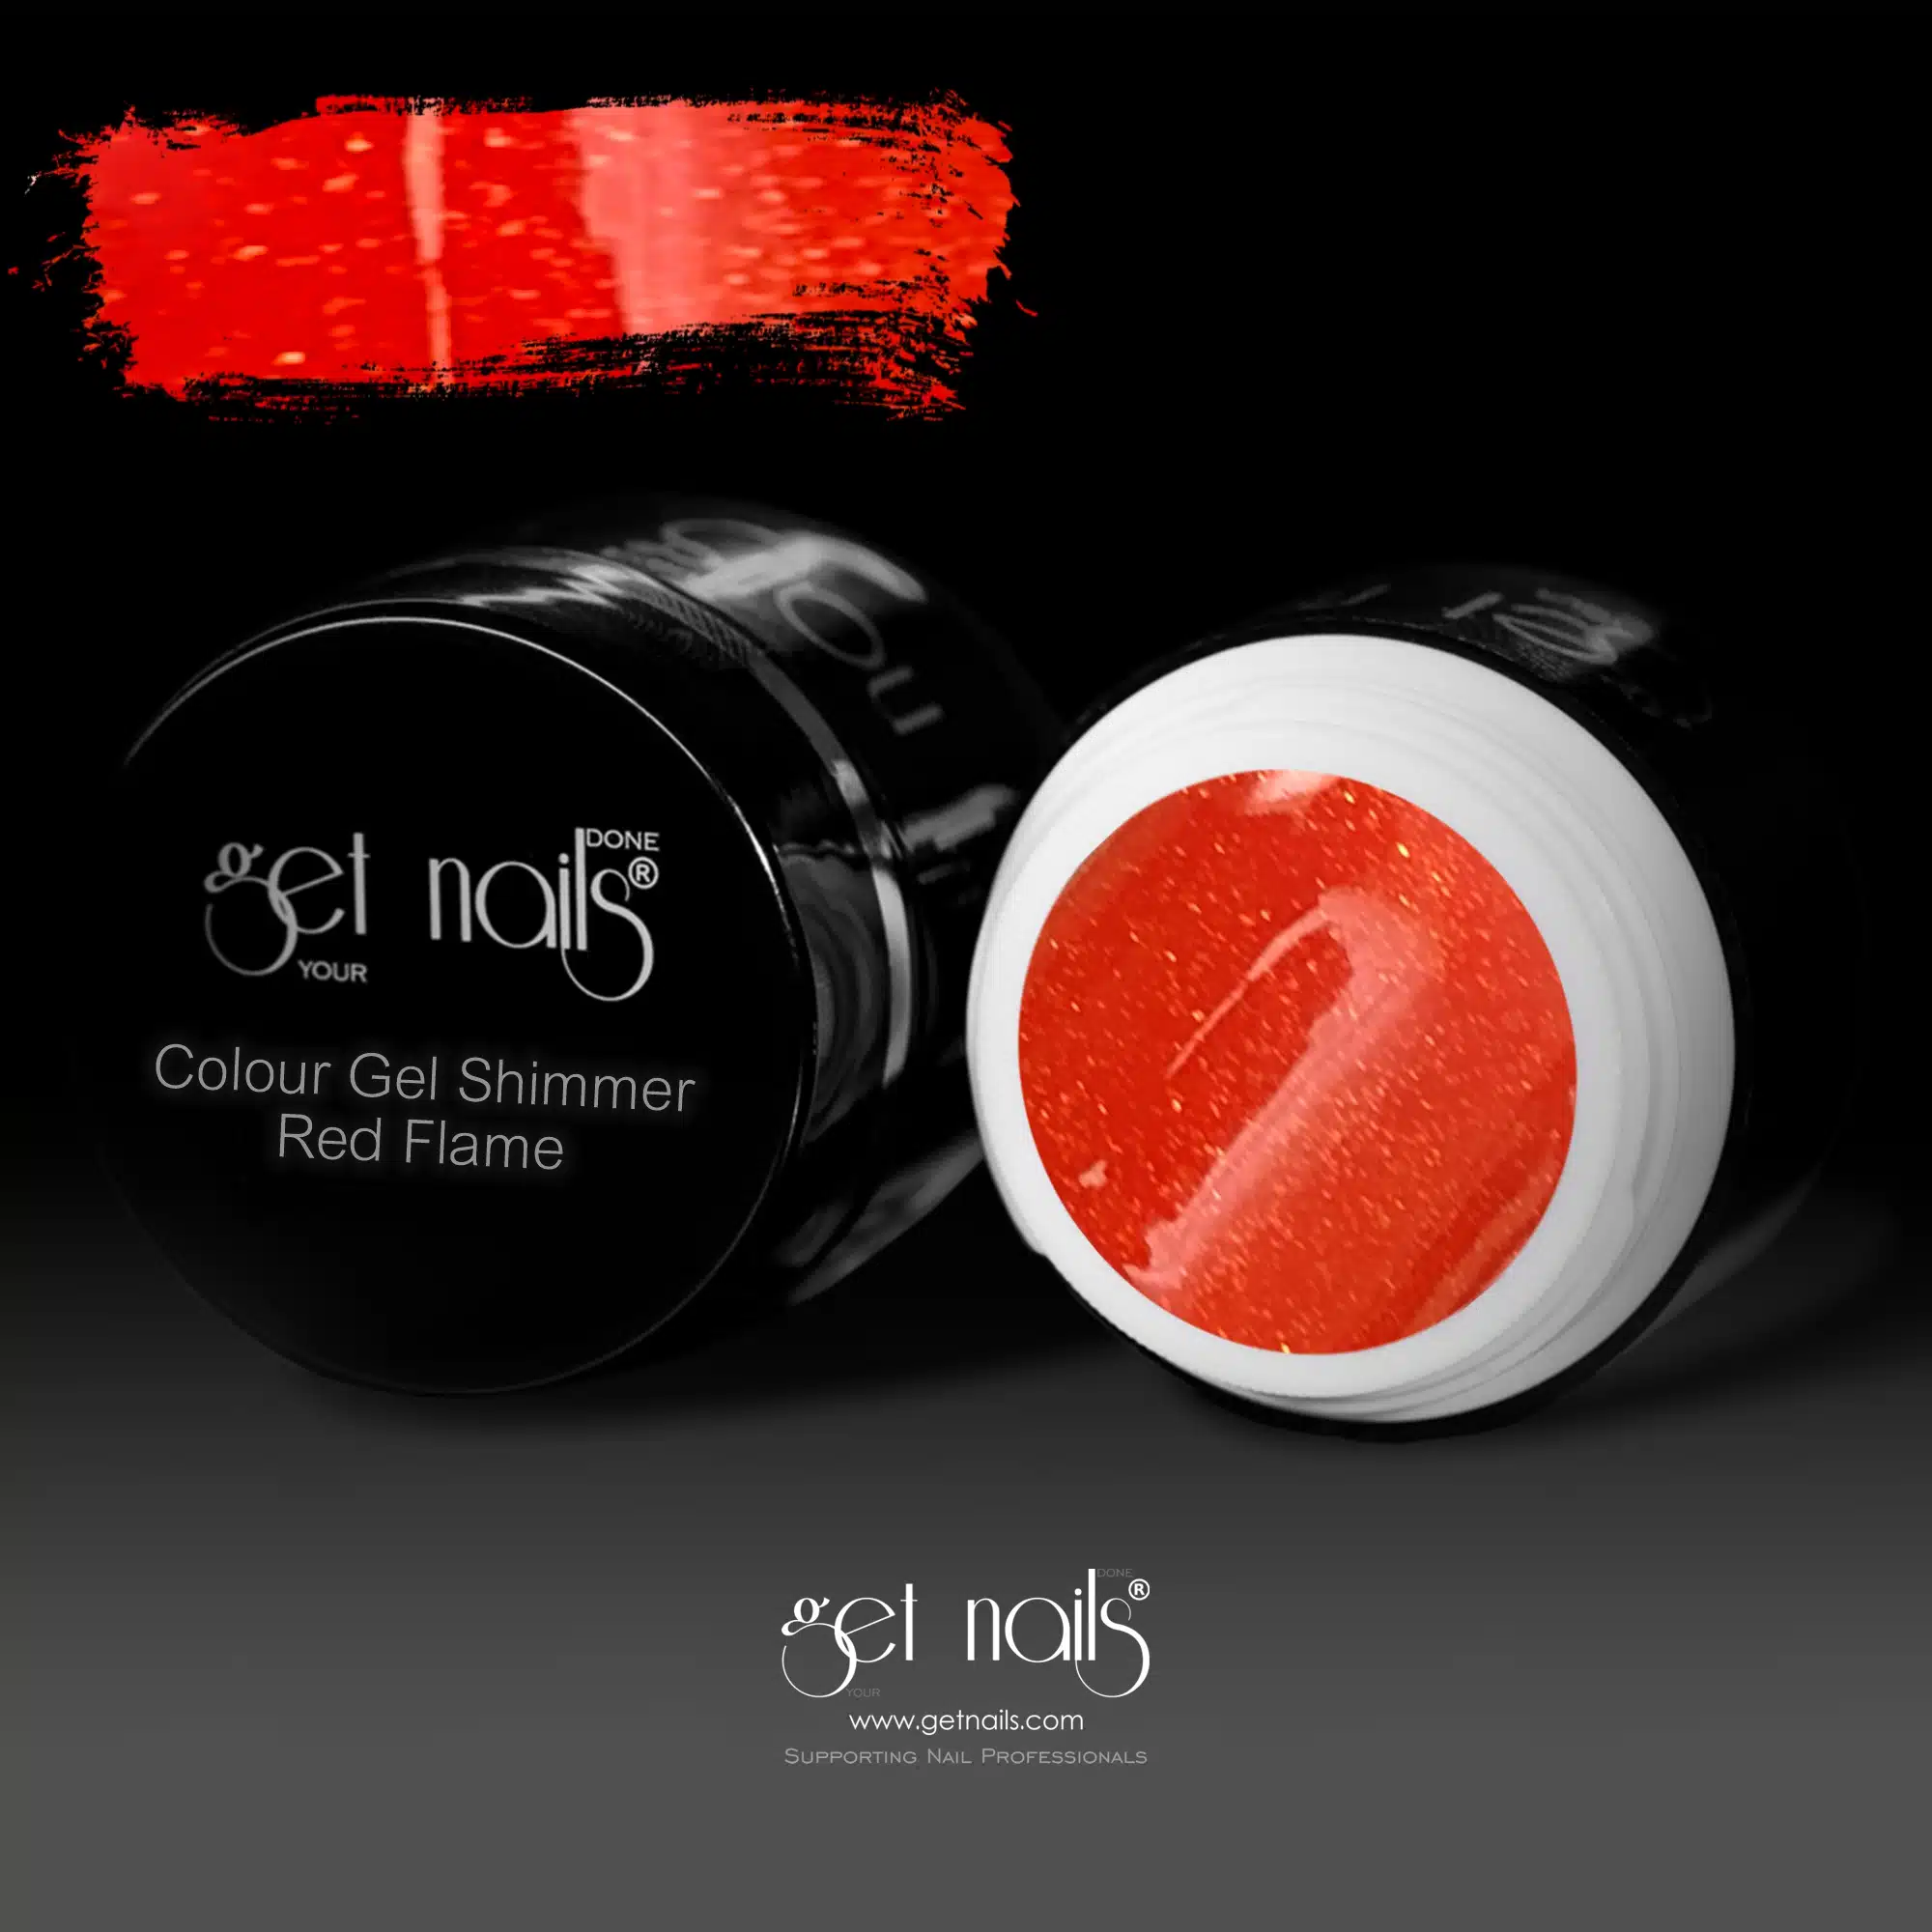 Get Nails Austria - Color Gel Shimmer Red Flame 5g